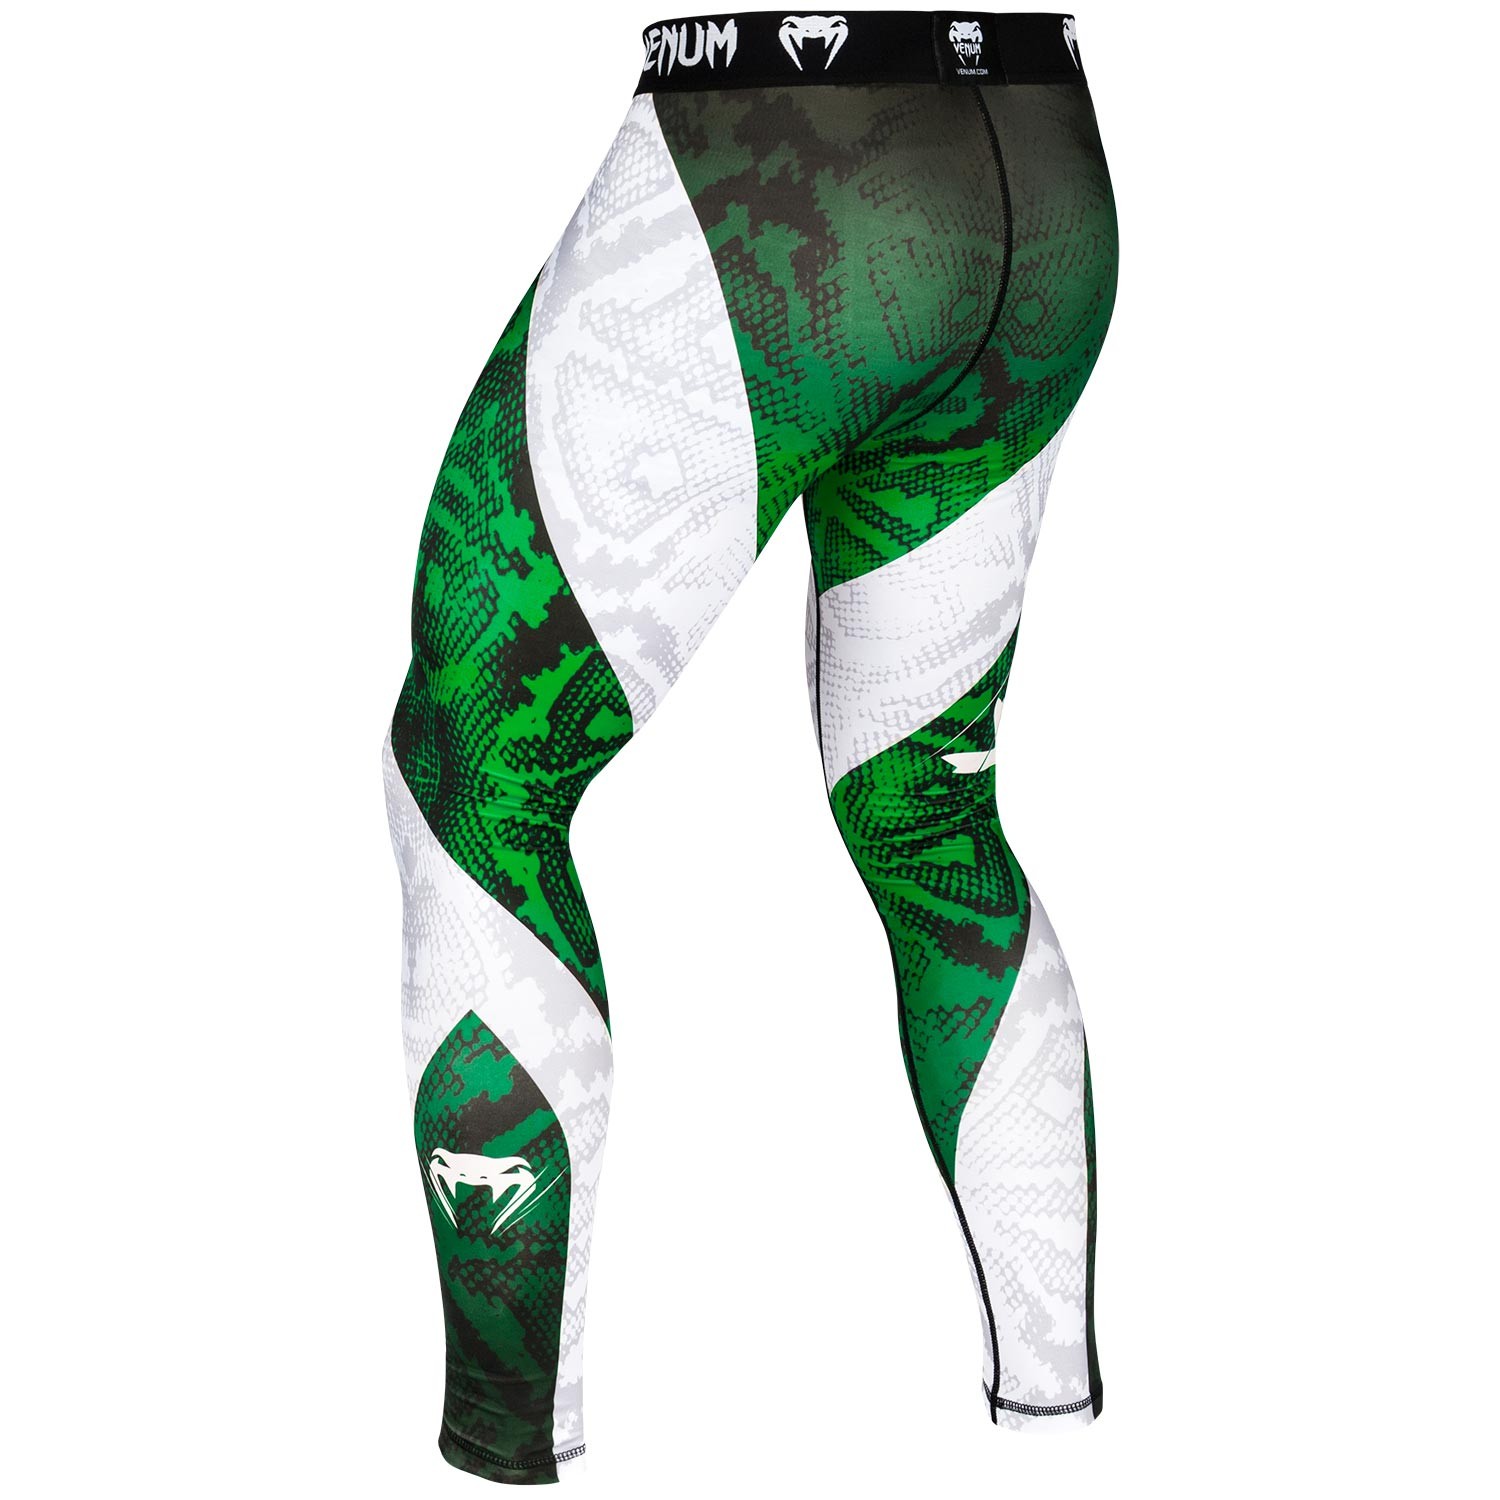 Компрессионные штаны Venum Amazonia 5.0 Green